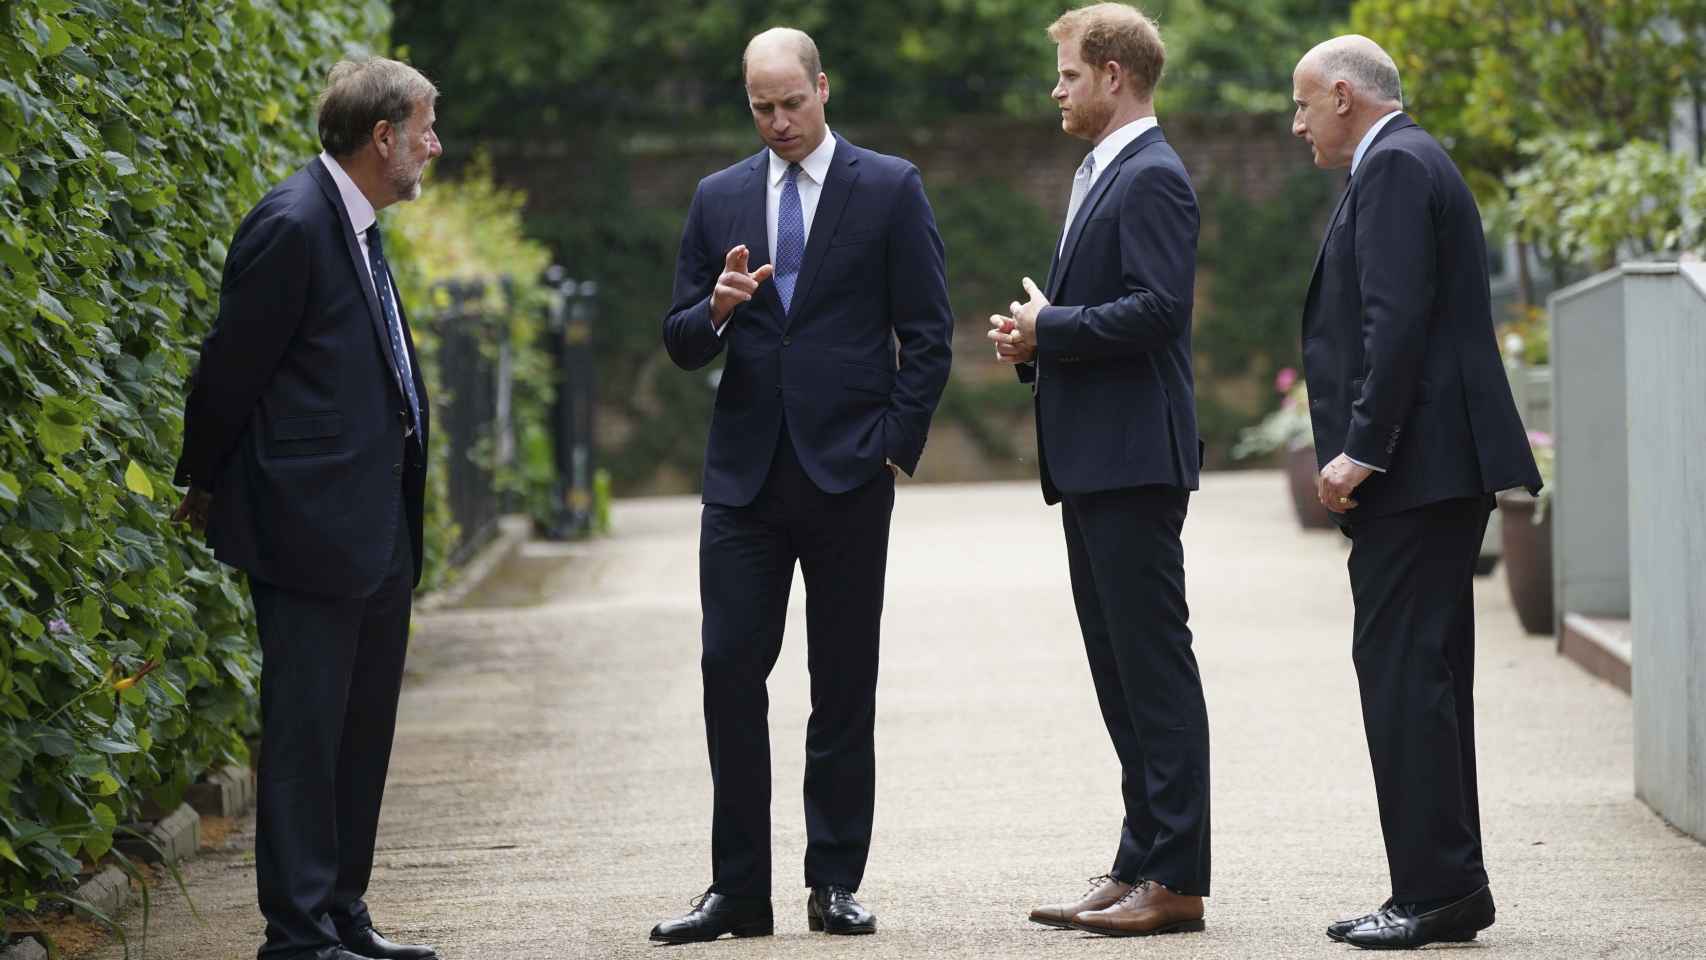 El príncipe Harry en el último encuentro con su familia.